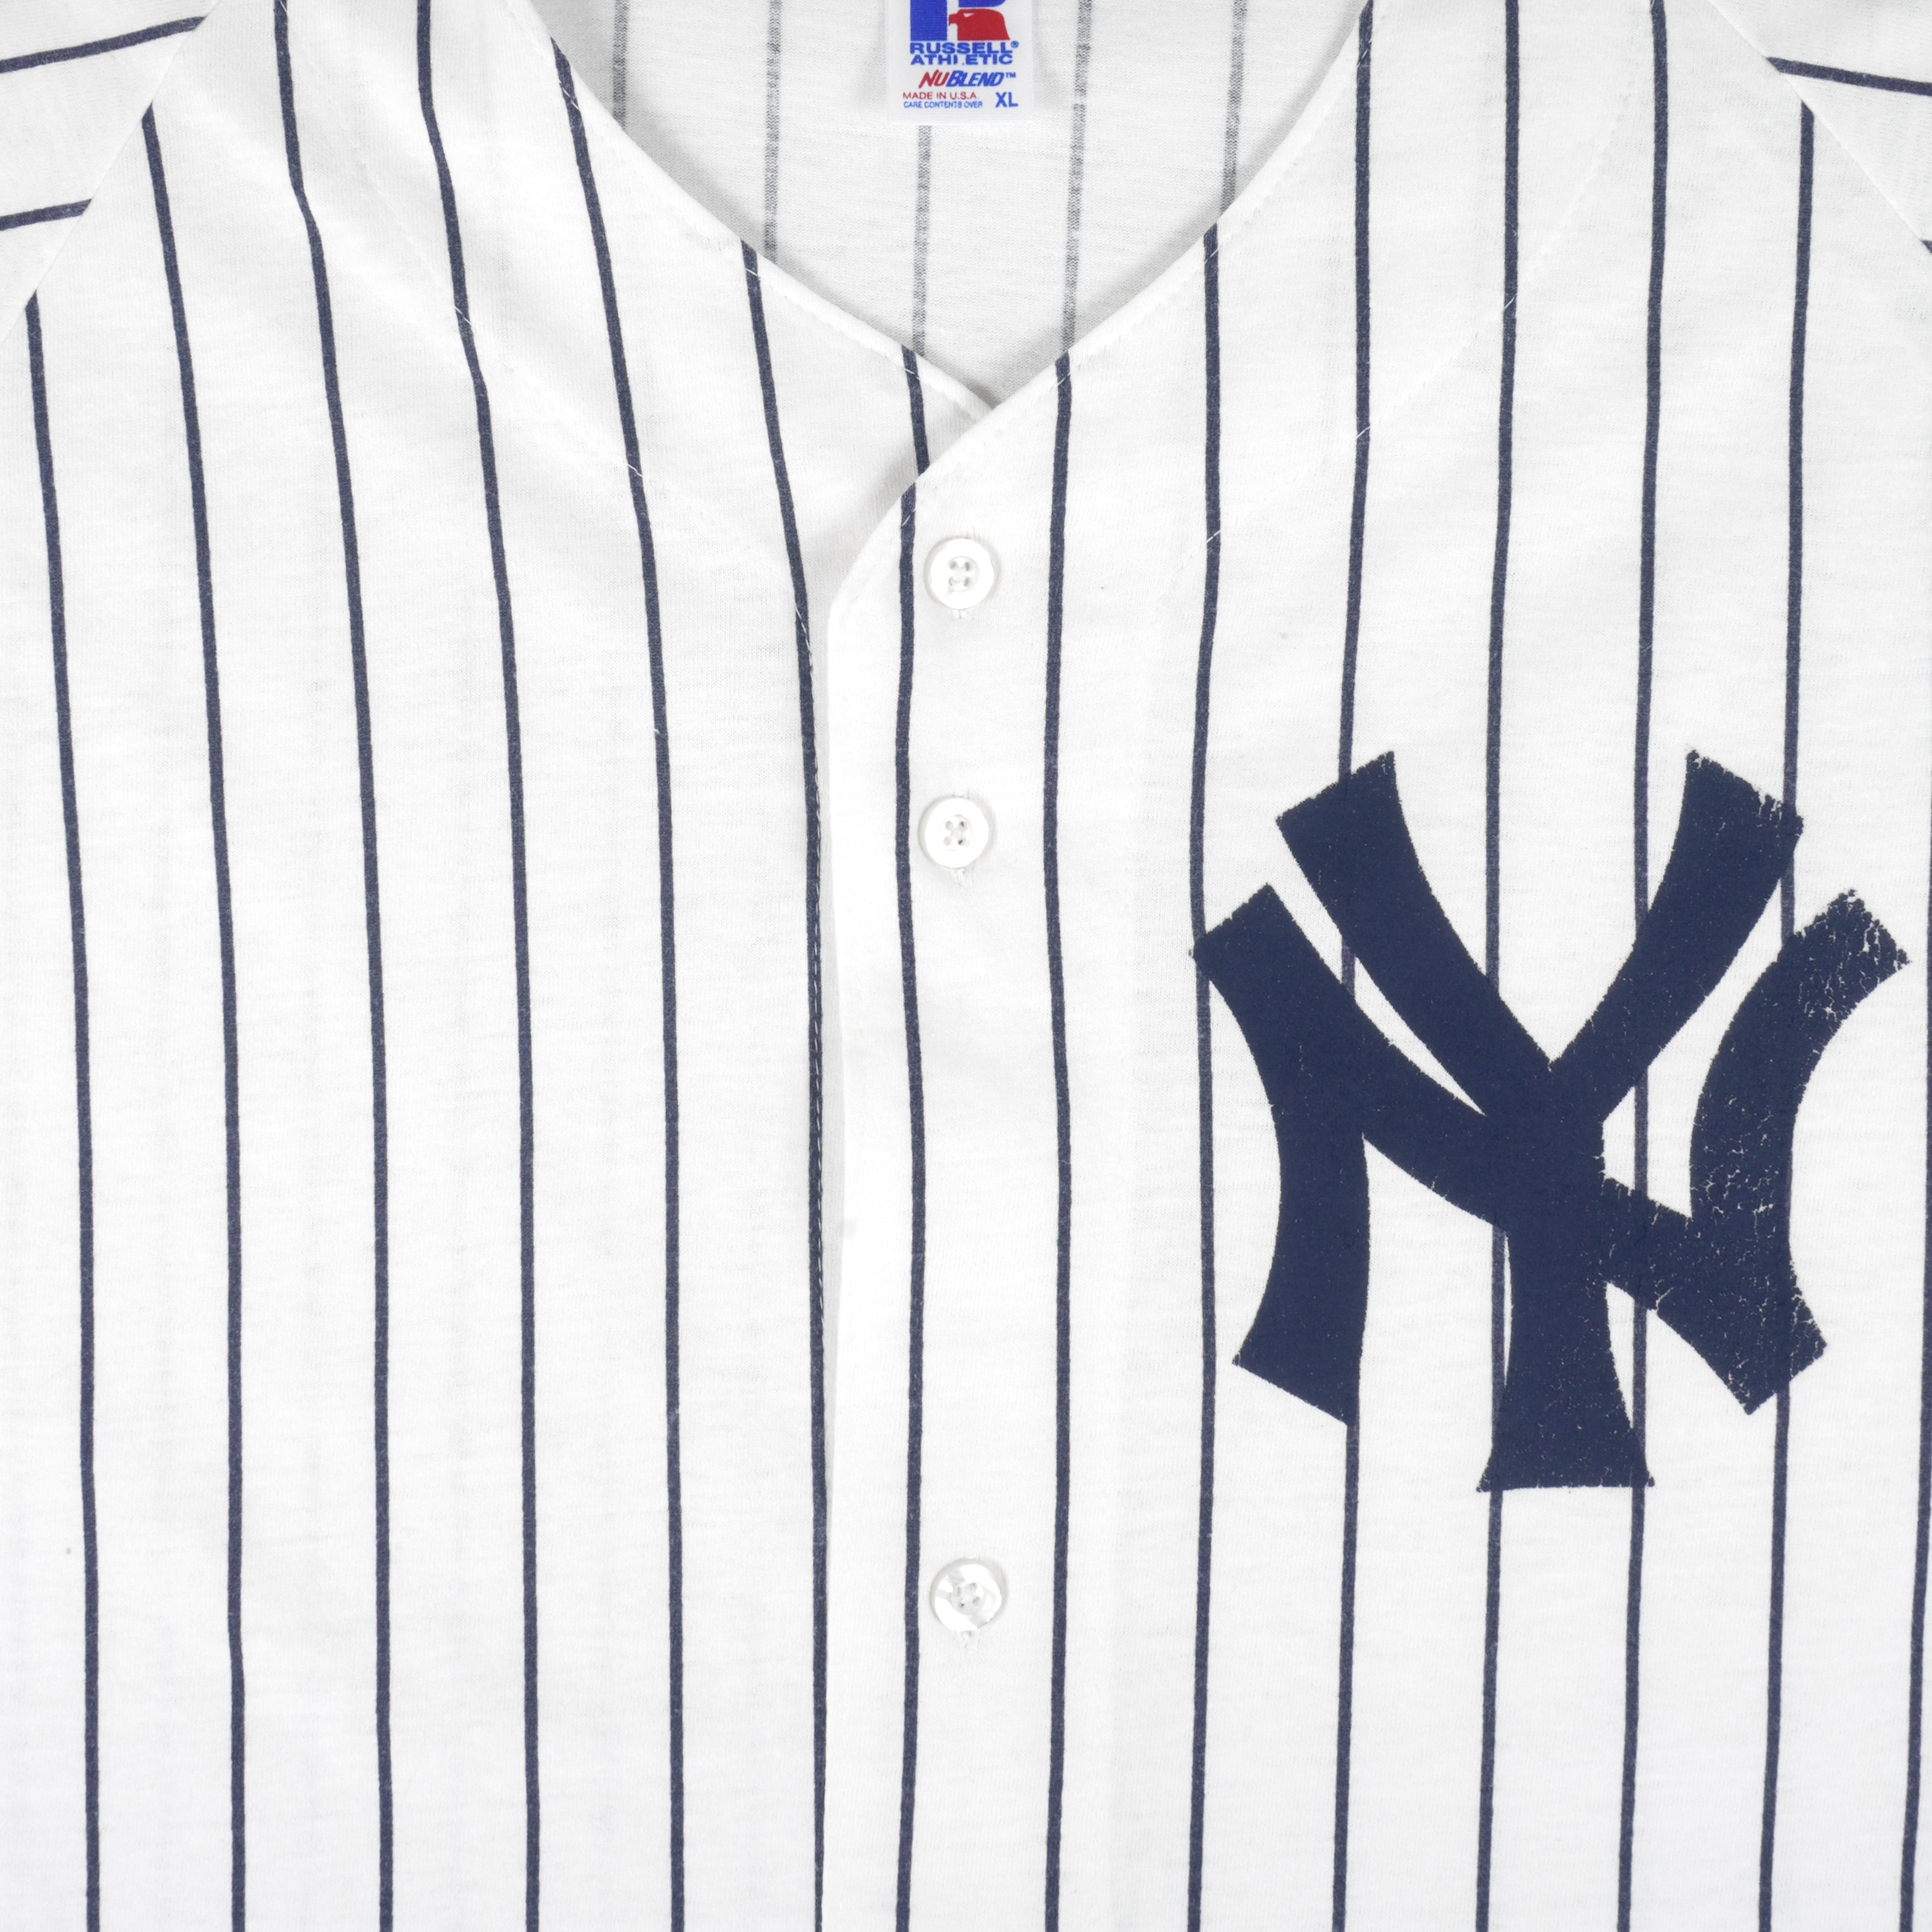 Vintage 90s New York Yankees MLB Baseball Pinstripe Starter 